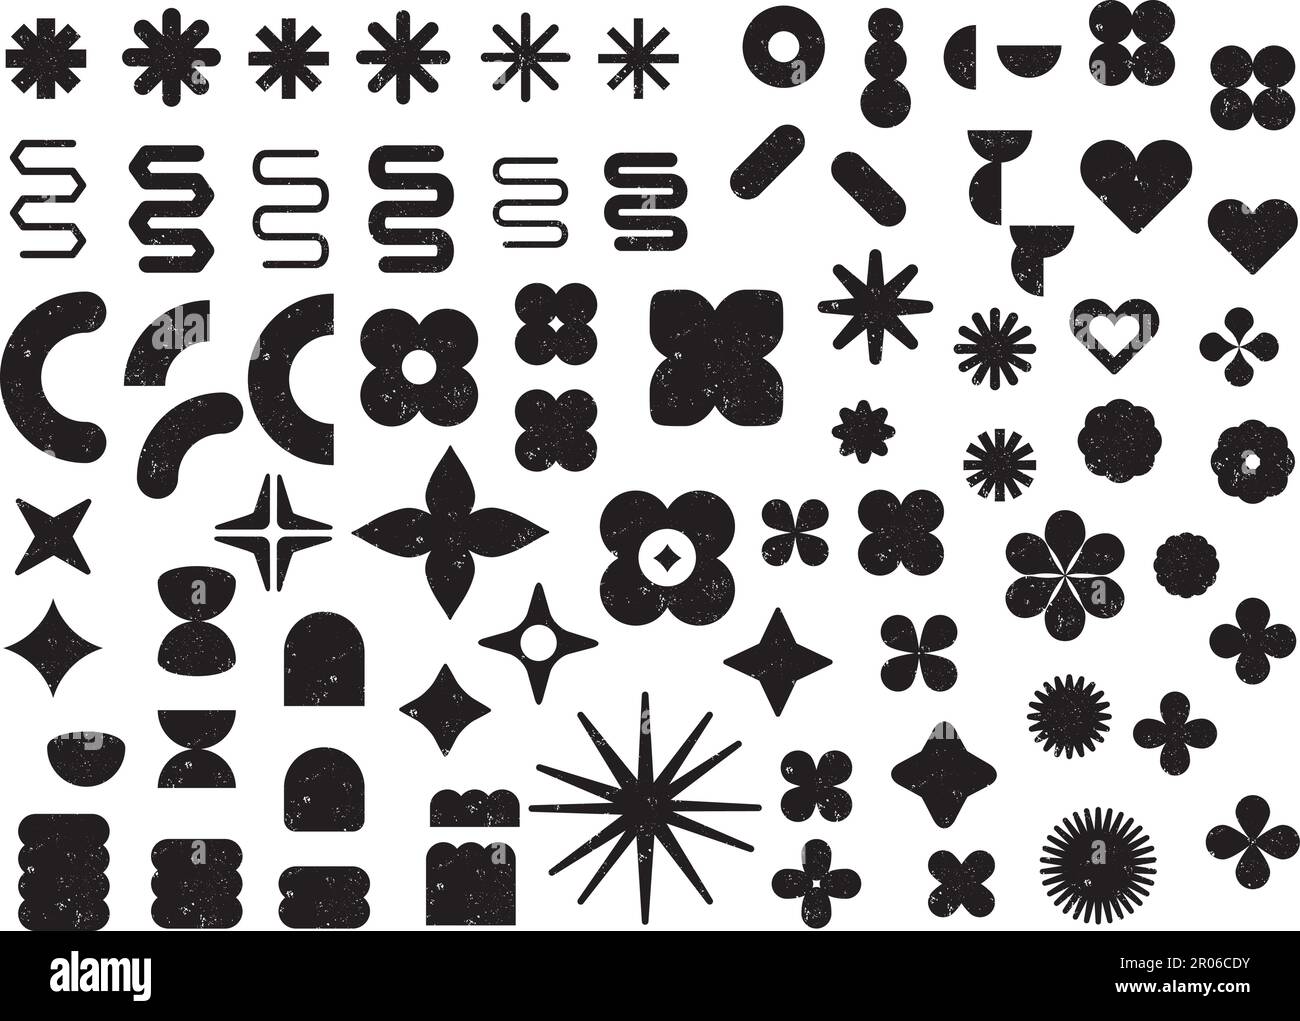 Grande set di forme assortite; forme nere con texture grunge. Vendita o sconto adesivi, icone, badge. Forme astratte vettorizzate Illustrazione Vettoriale